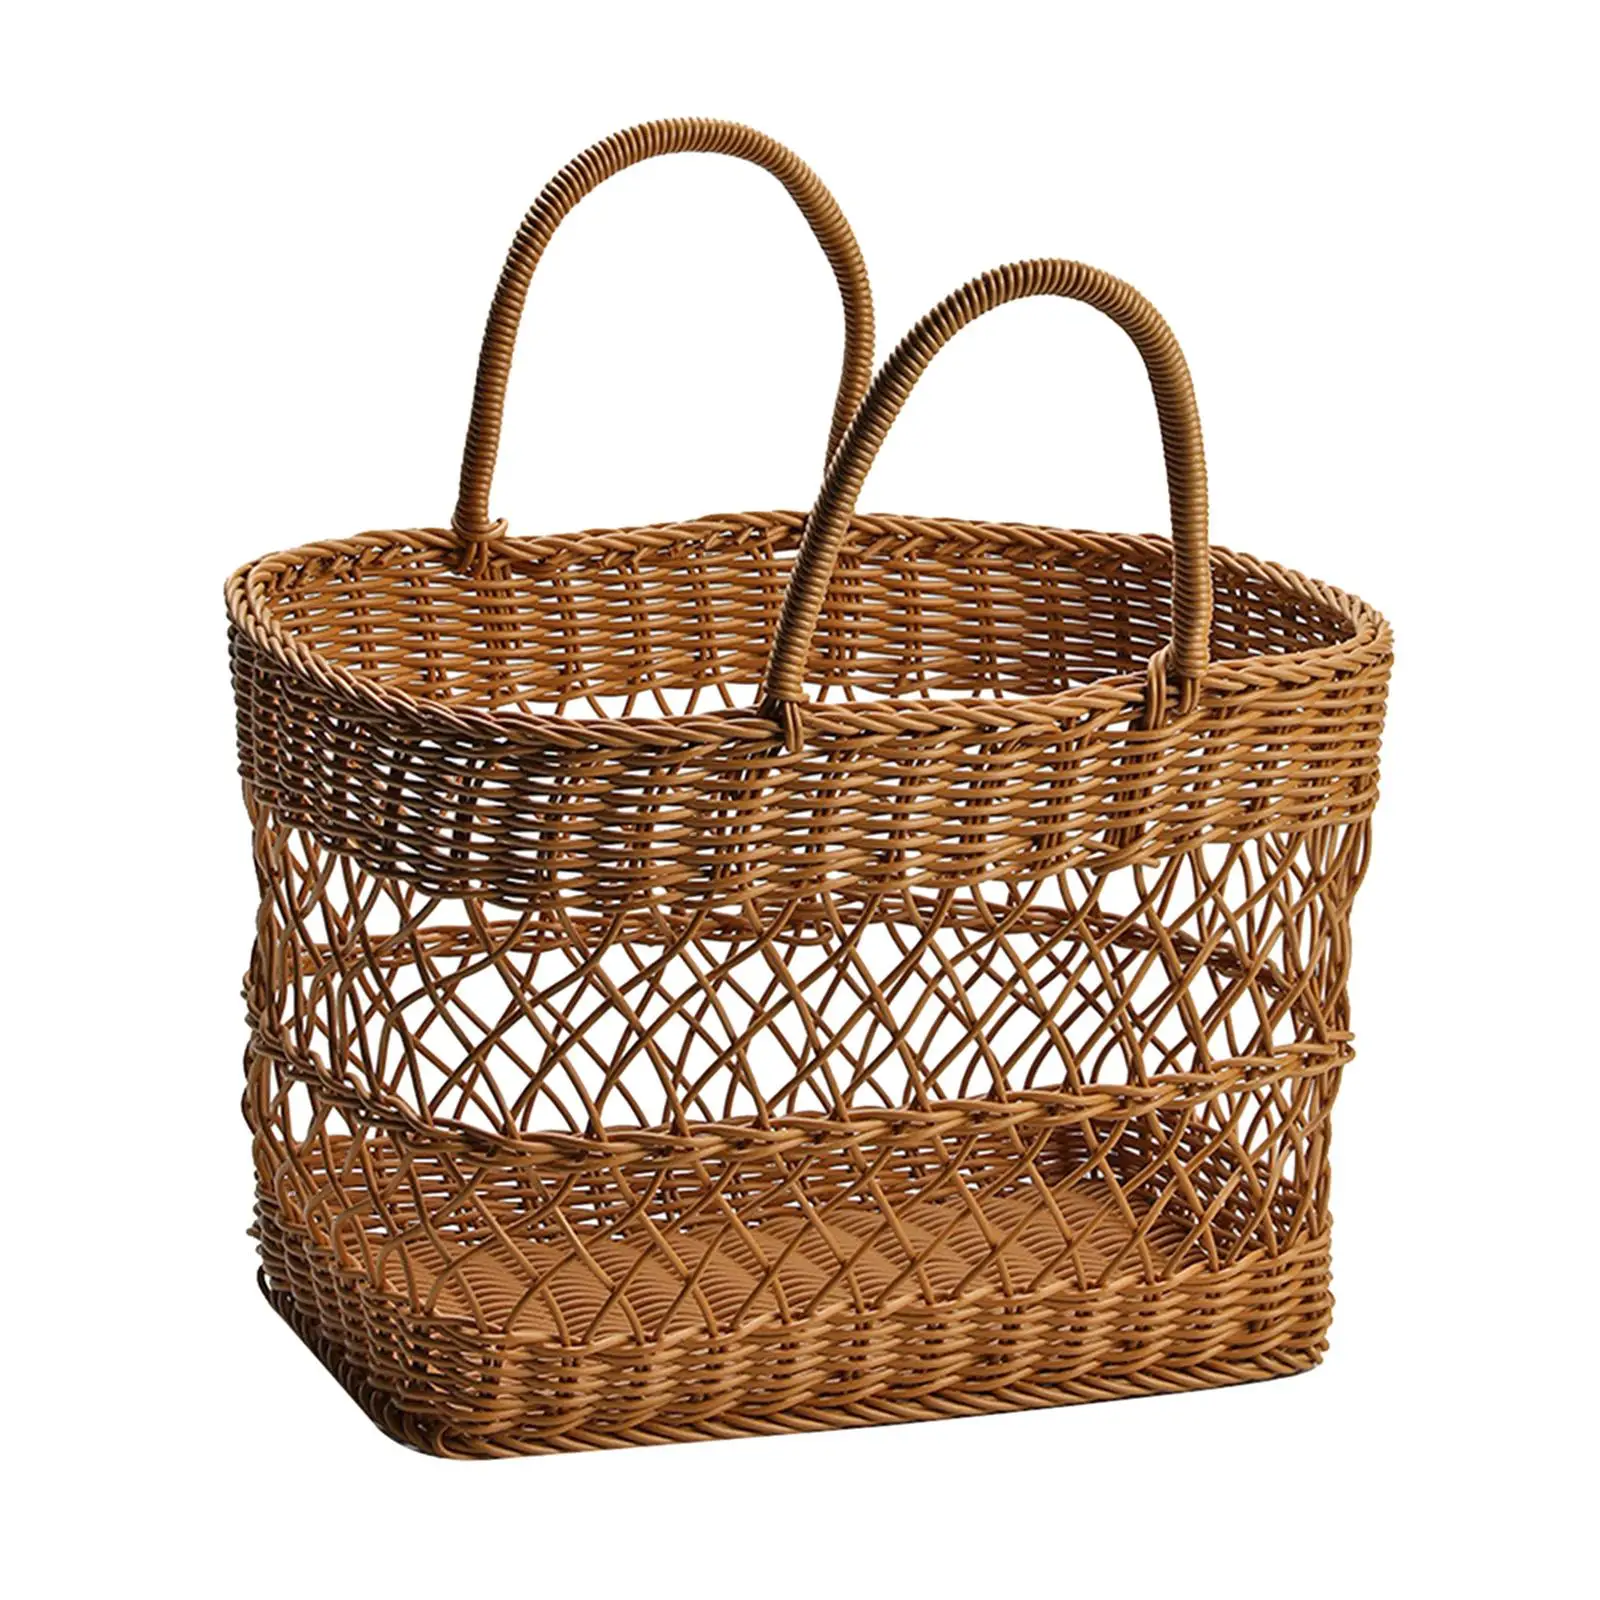 Handwoven Basket with Handles Shopping Basket Multifunctional Picking Basket